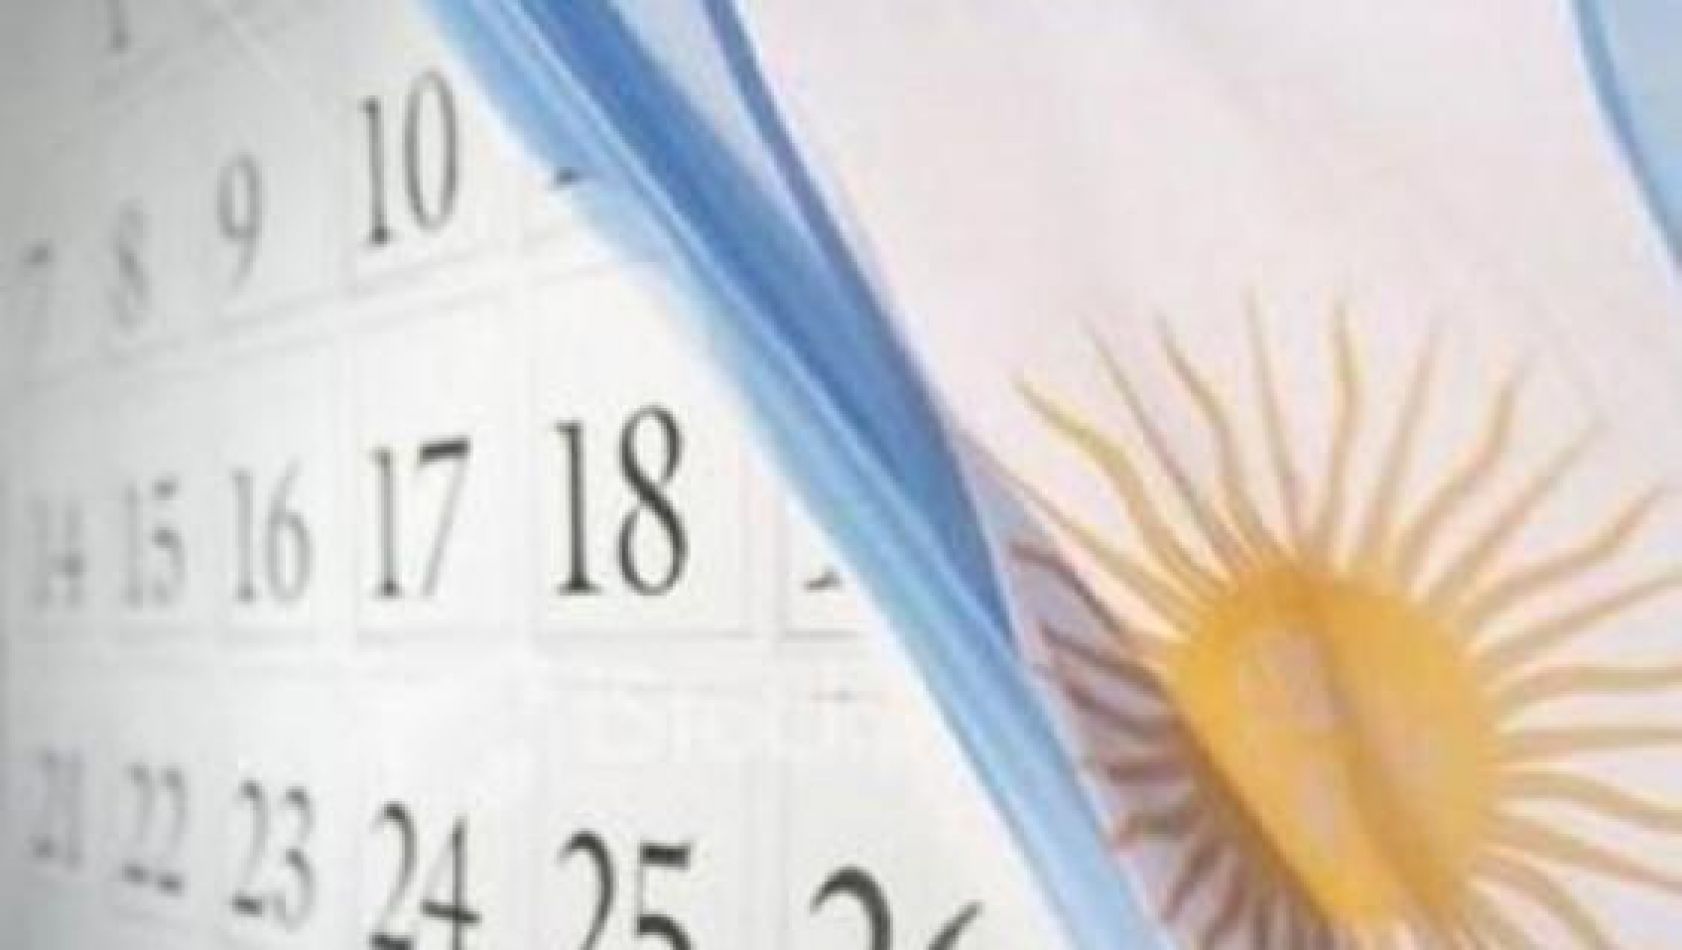 La decisión presidencial no cambia que en Salta el 17 es feriado